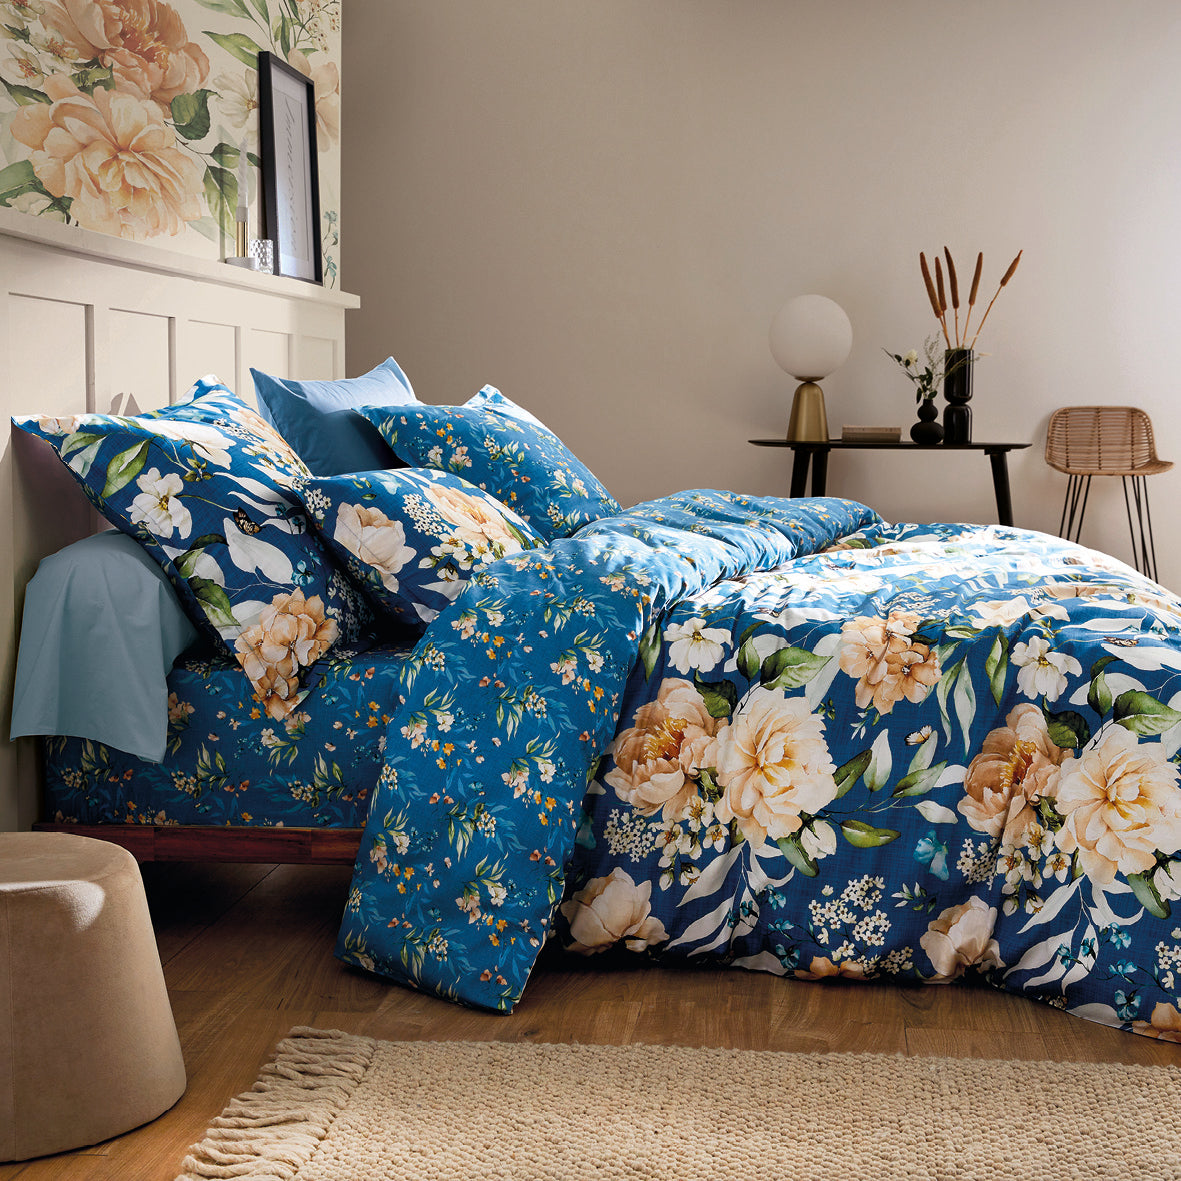 Duvet cover + pillowcase(s) cotton satin - Jardin de Fleurs Blue